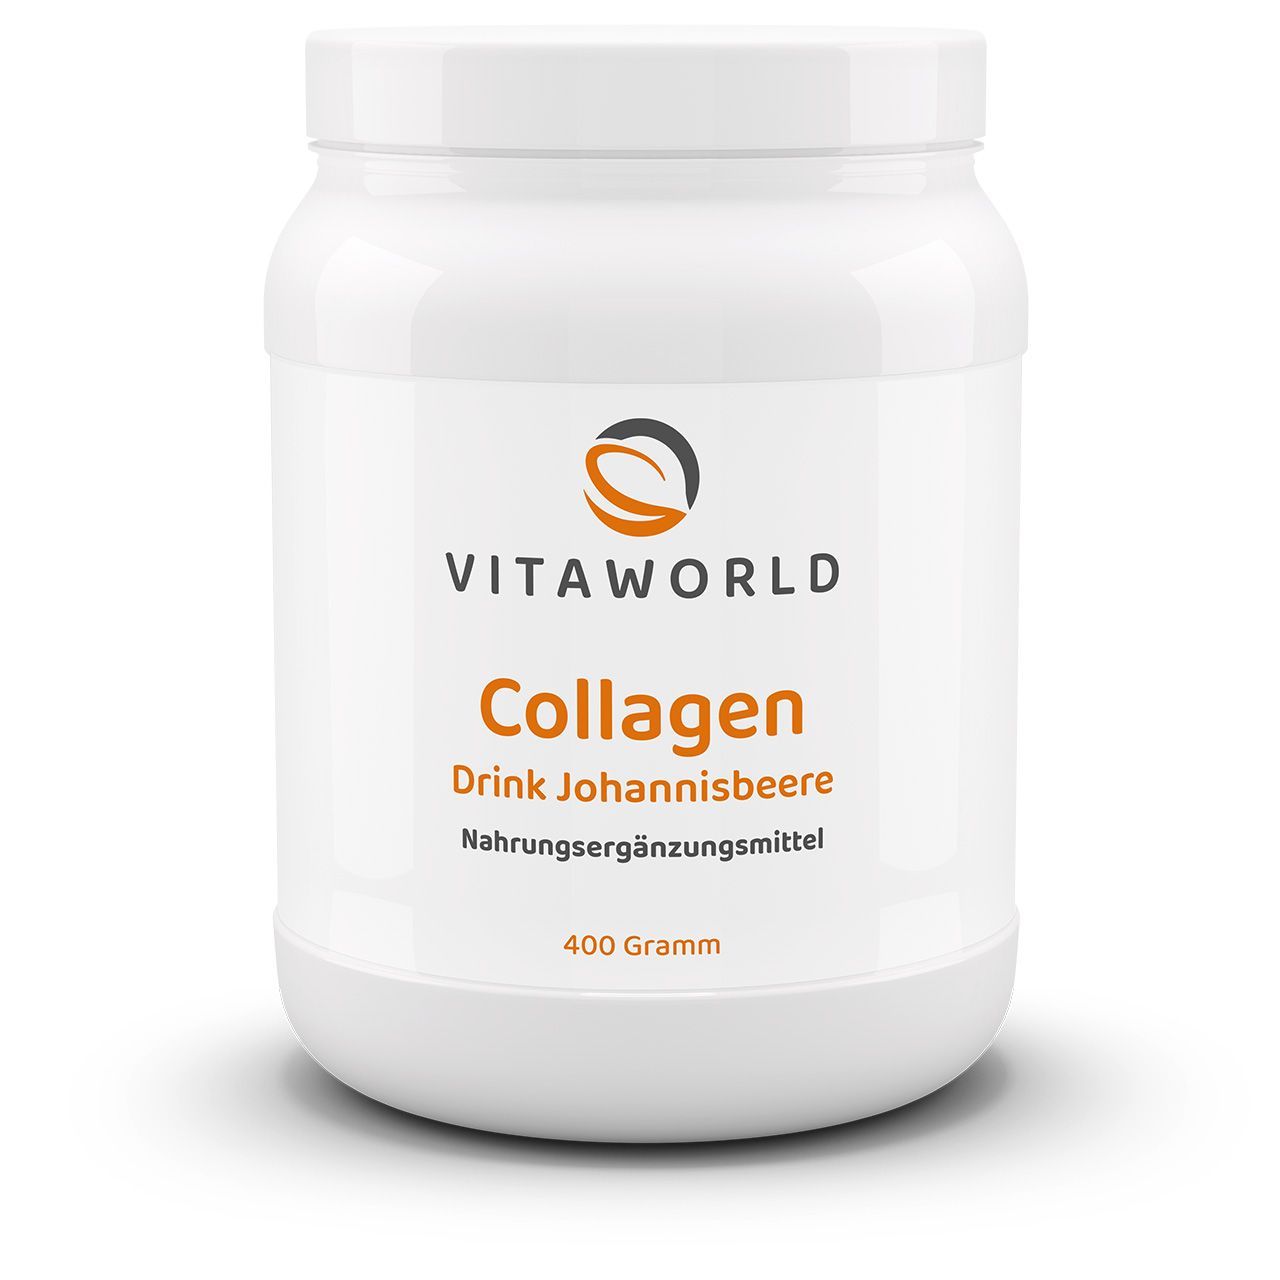 Vitaworld Collagen Drink Johannisbeere | 400g | mit L-Carnosin und Goji-Extrakt